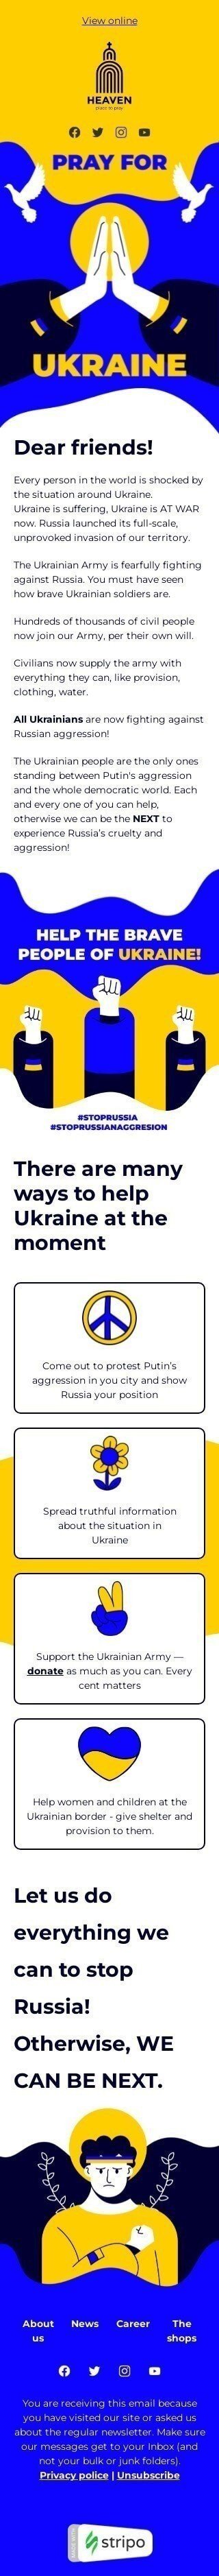 The “Stand with Ukraine” email template Visualização de dispositivo móvel